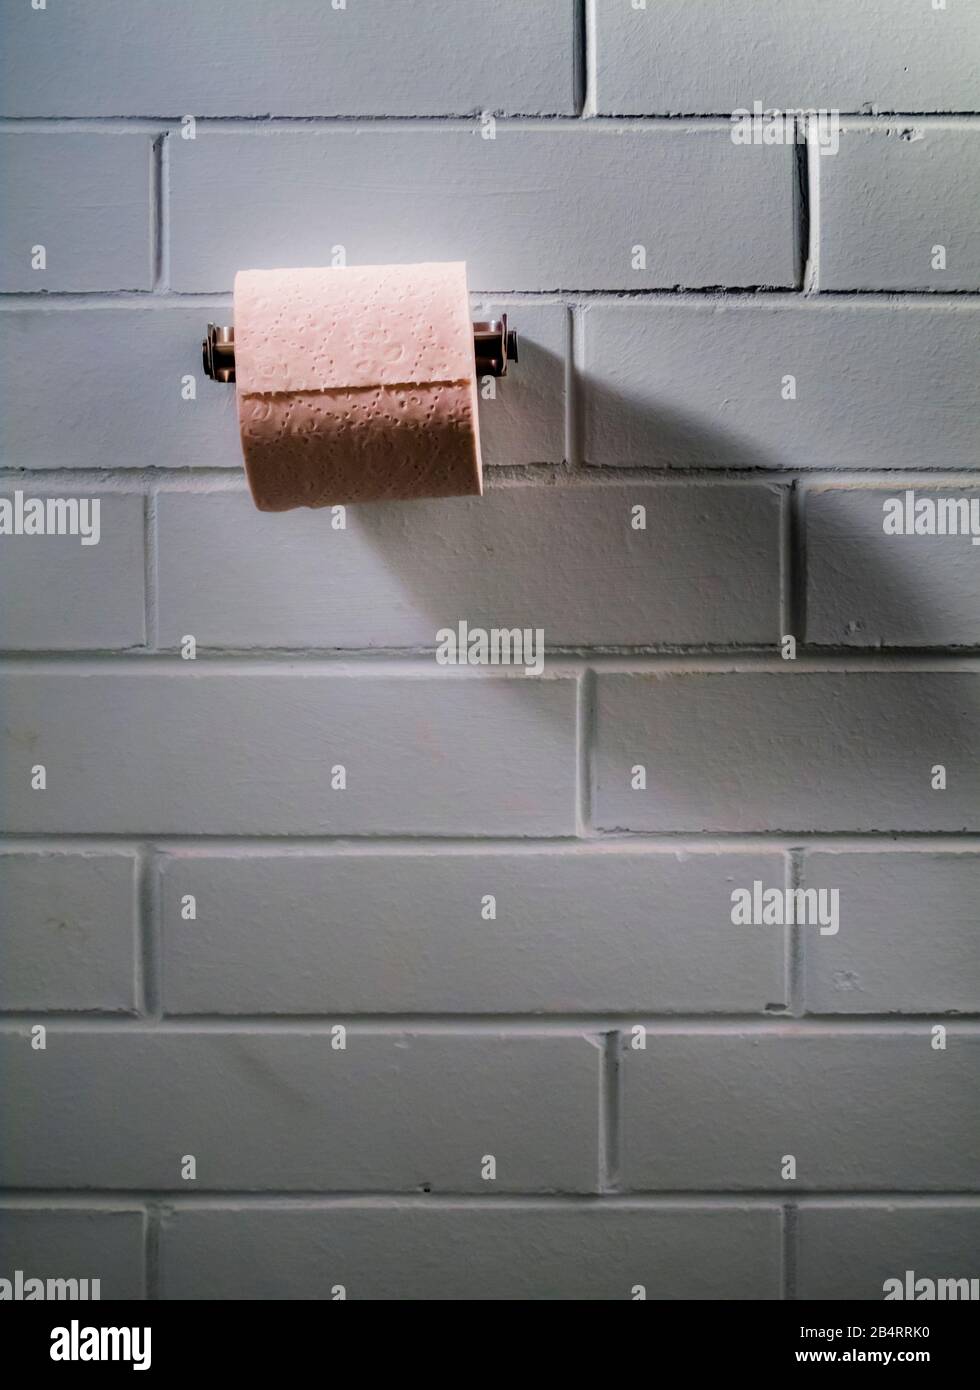 Rouleau de papier toilette sur le support Banque D'Images